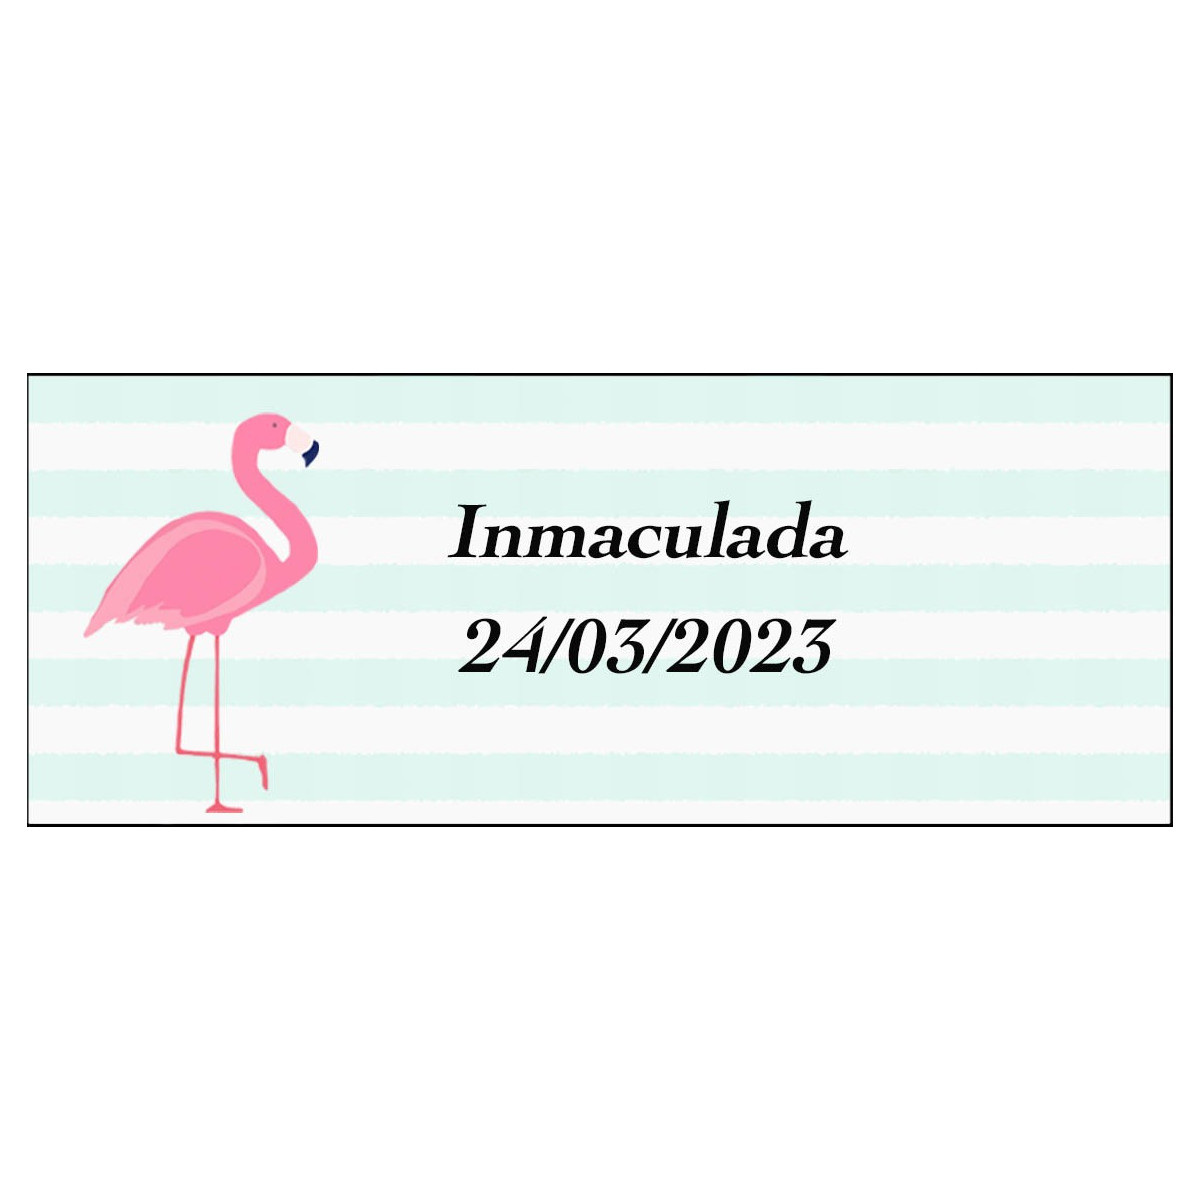 Adesivo flamenco rettangolare personalizzato per nome e data